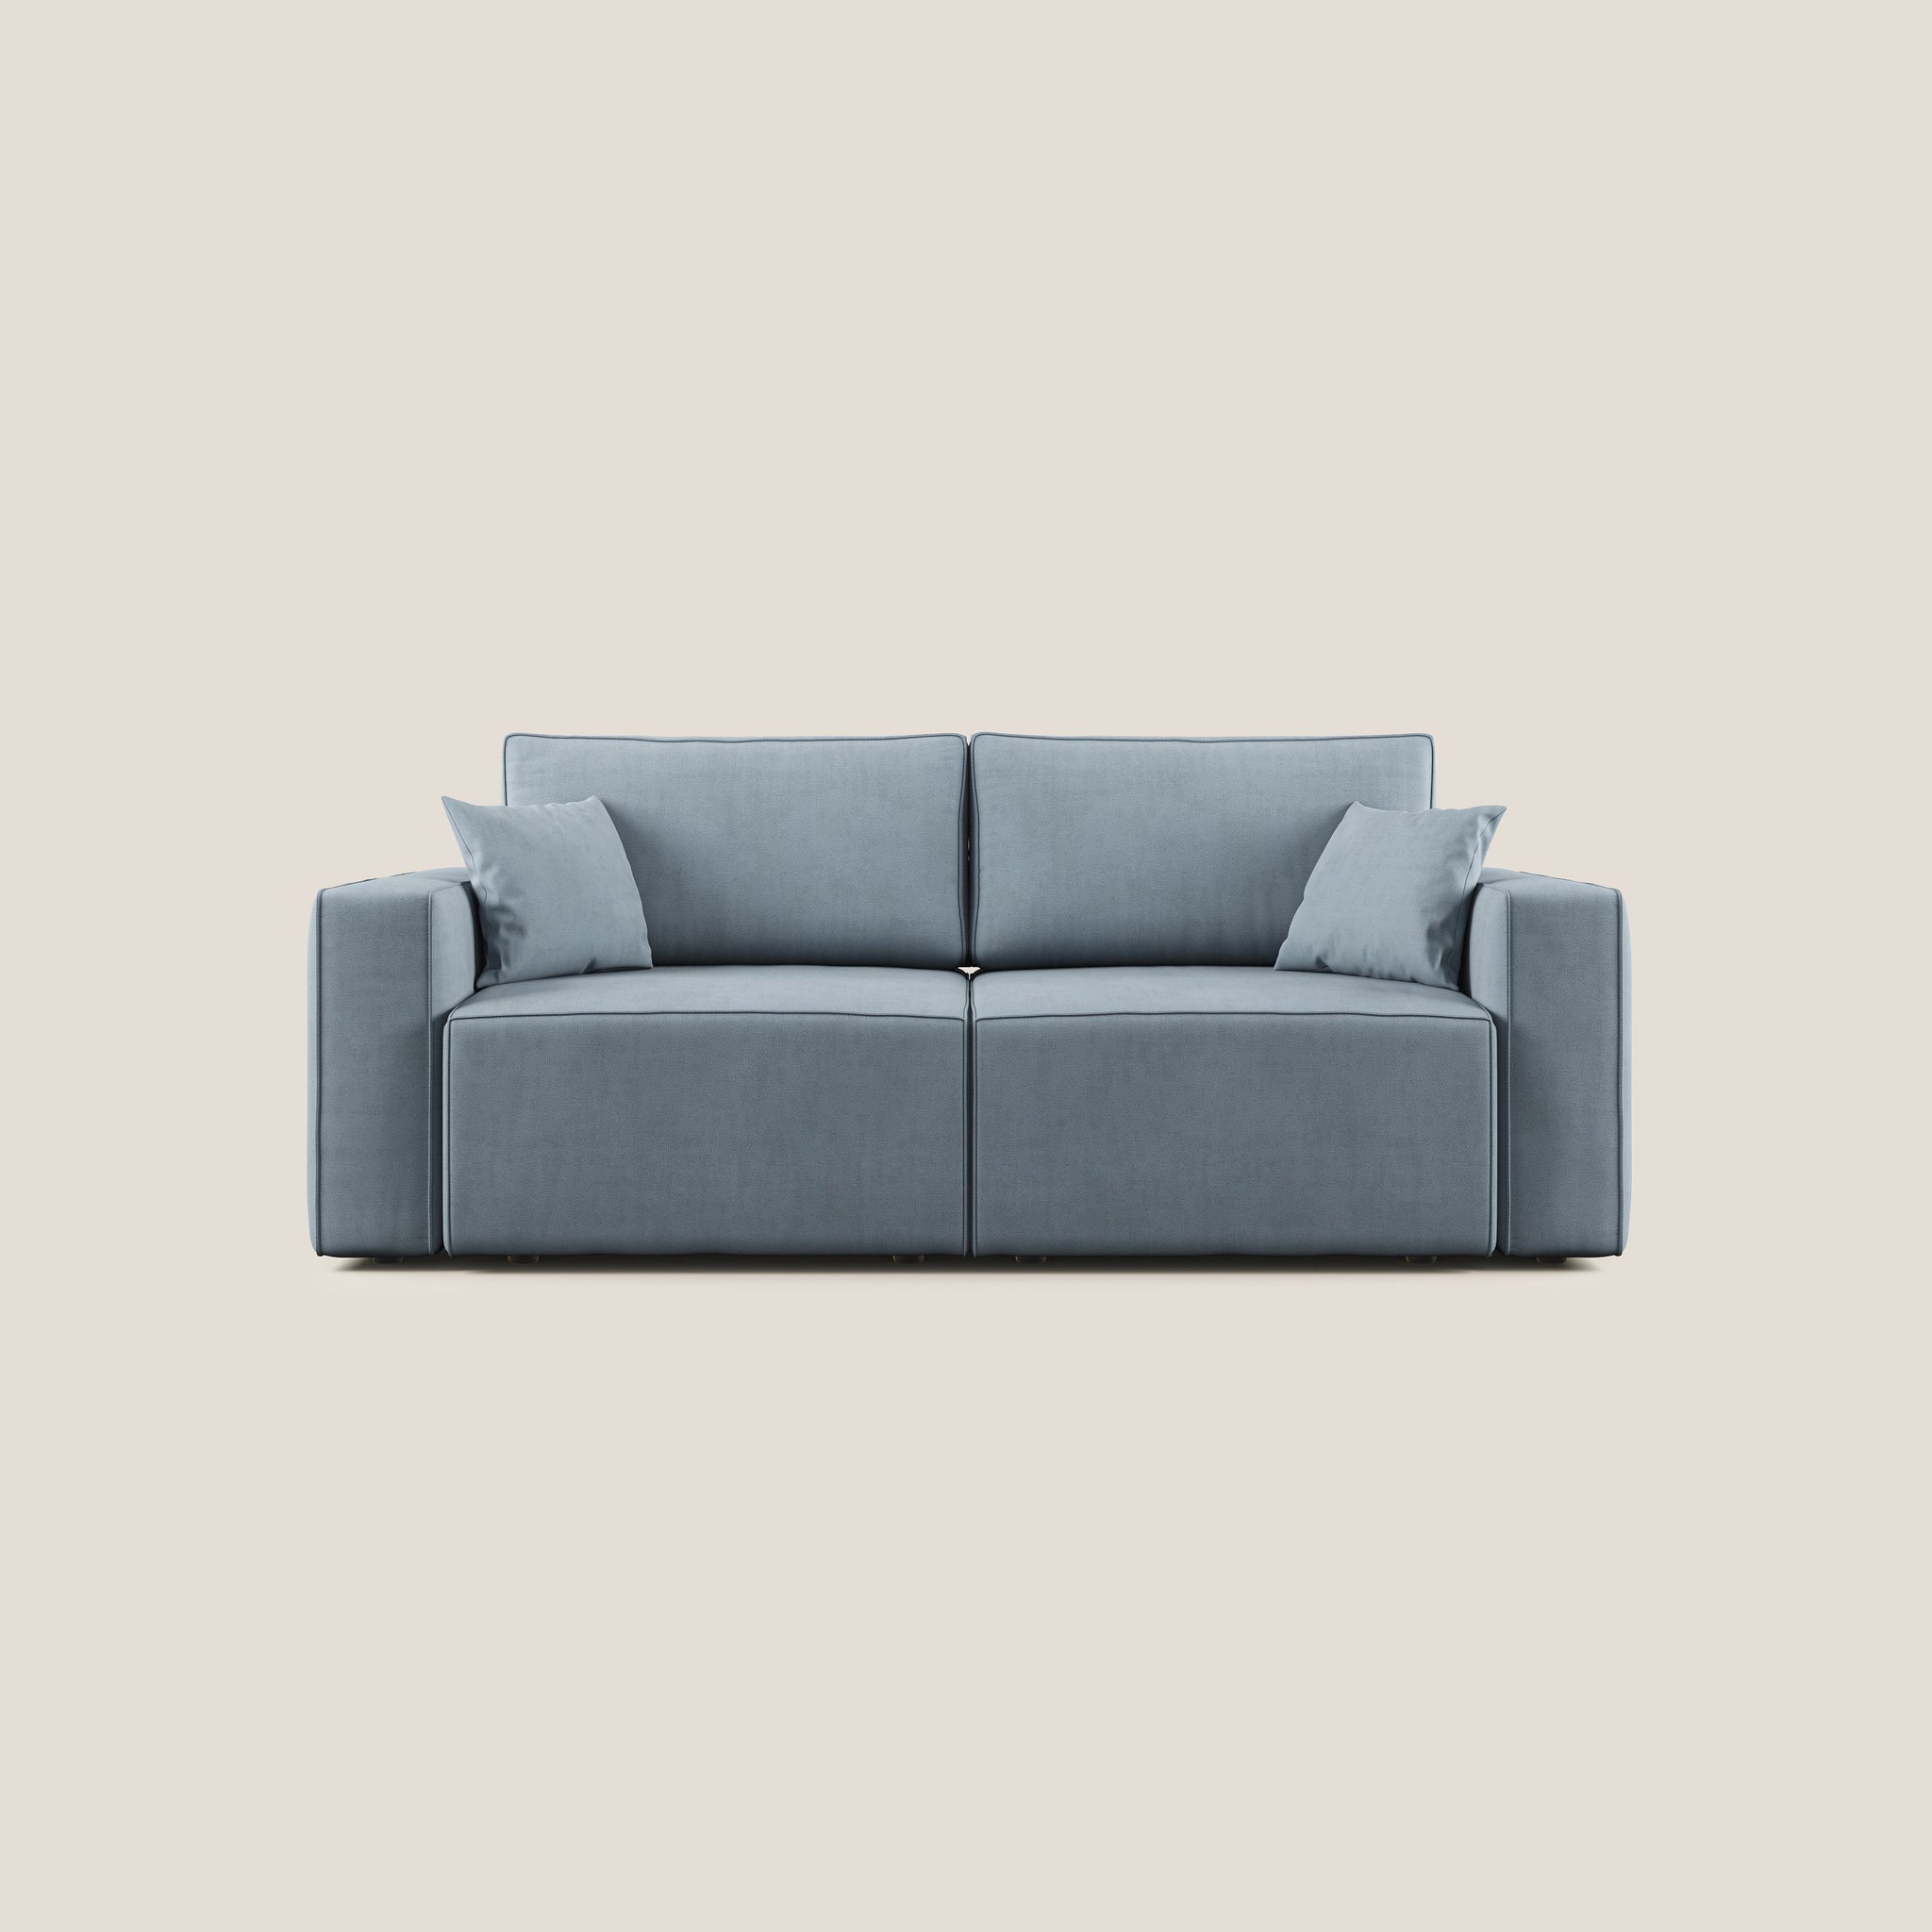 Morfeo divano con seduta estraibile in morbido tessuto impermeabile T02